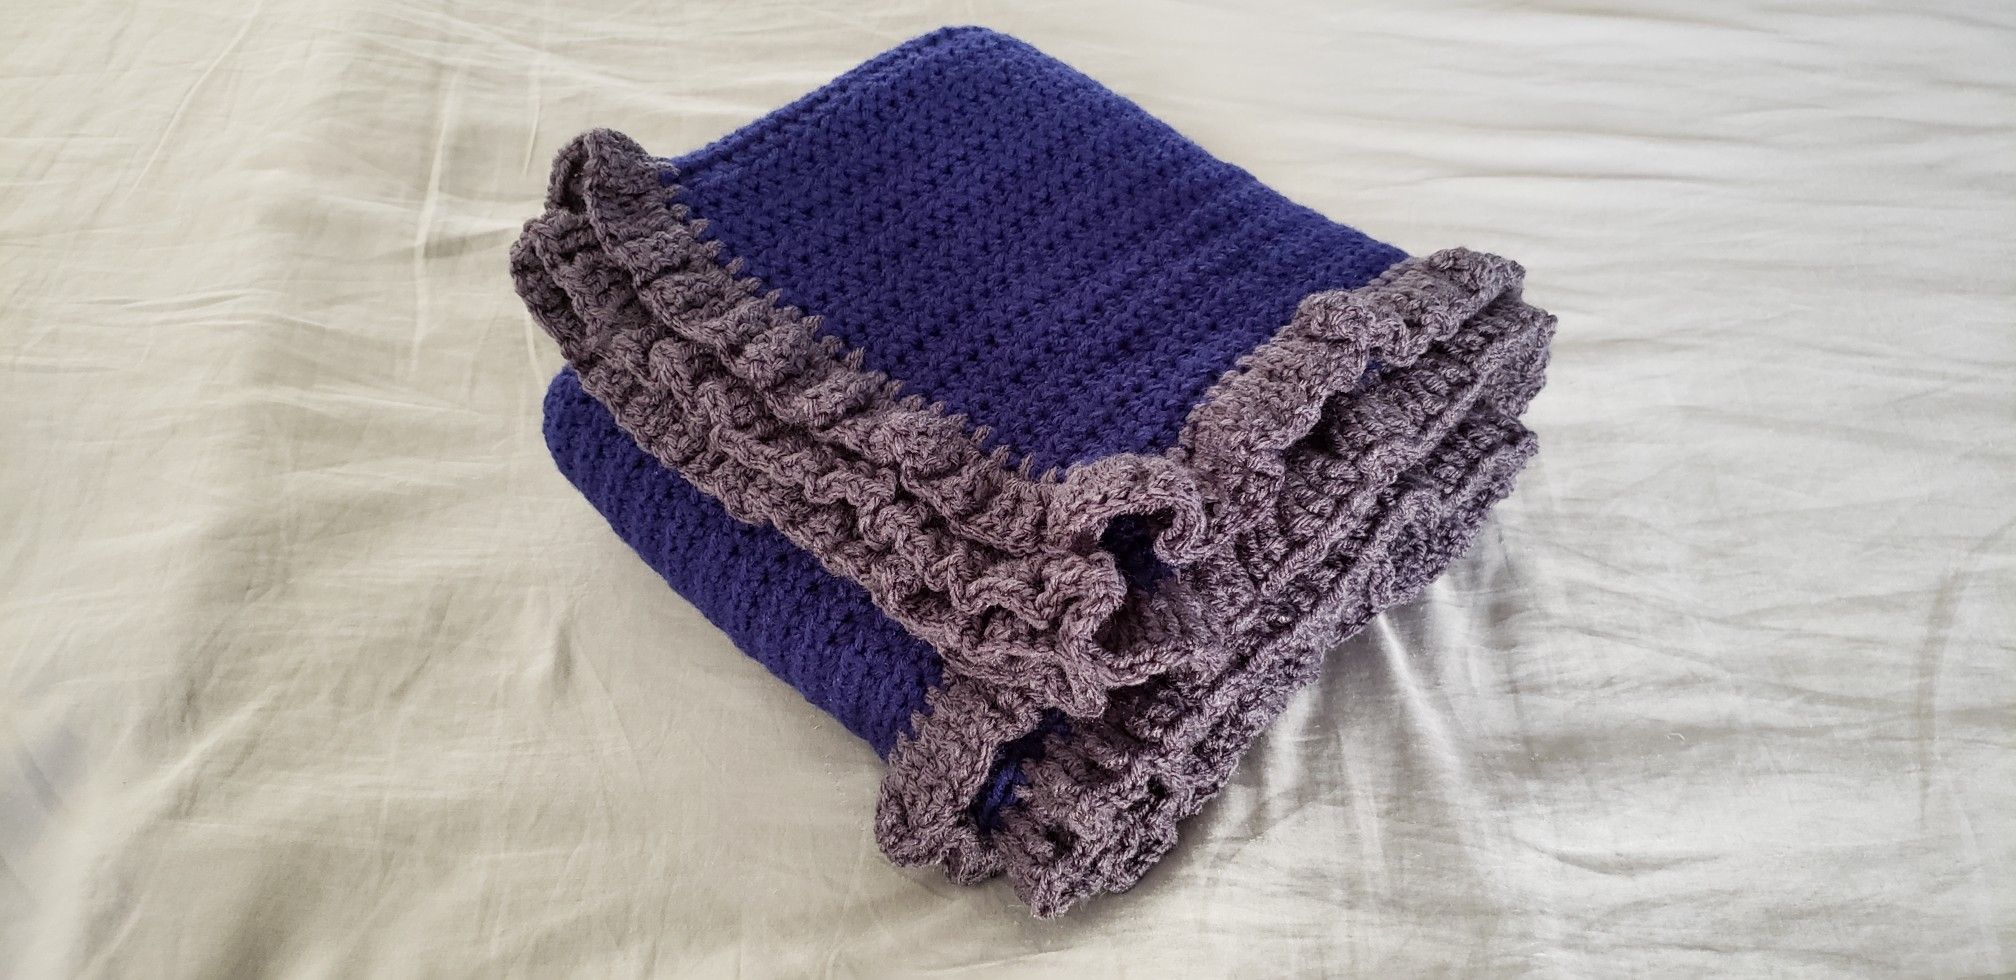 Blue/ gray crochet blanket